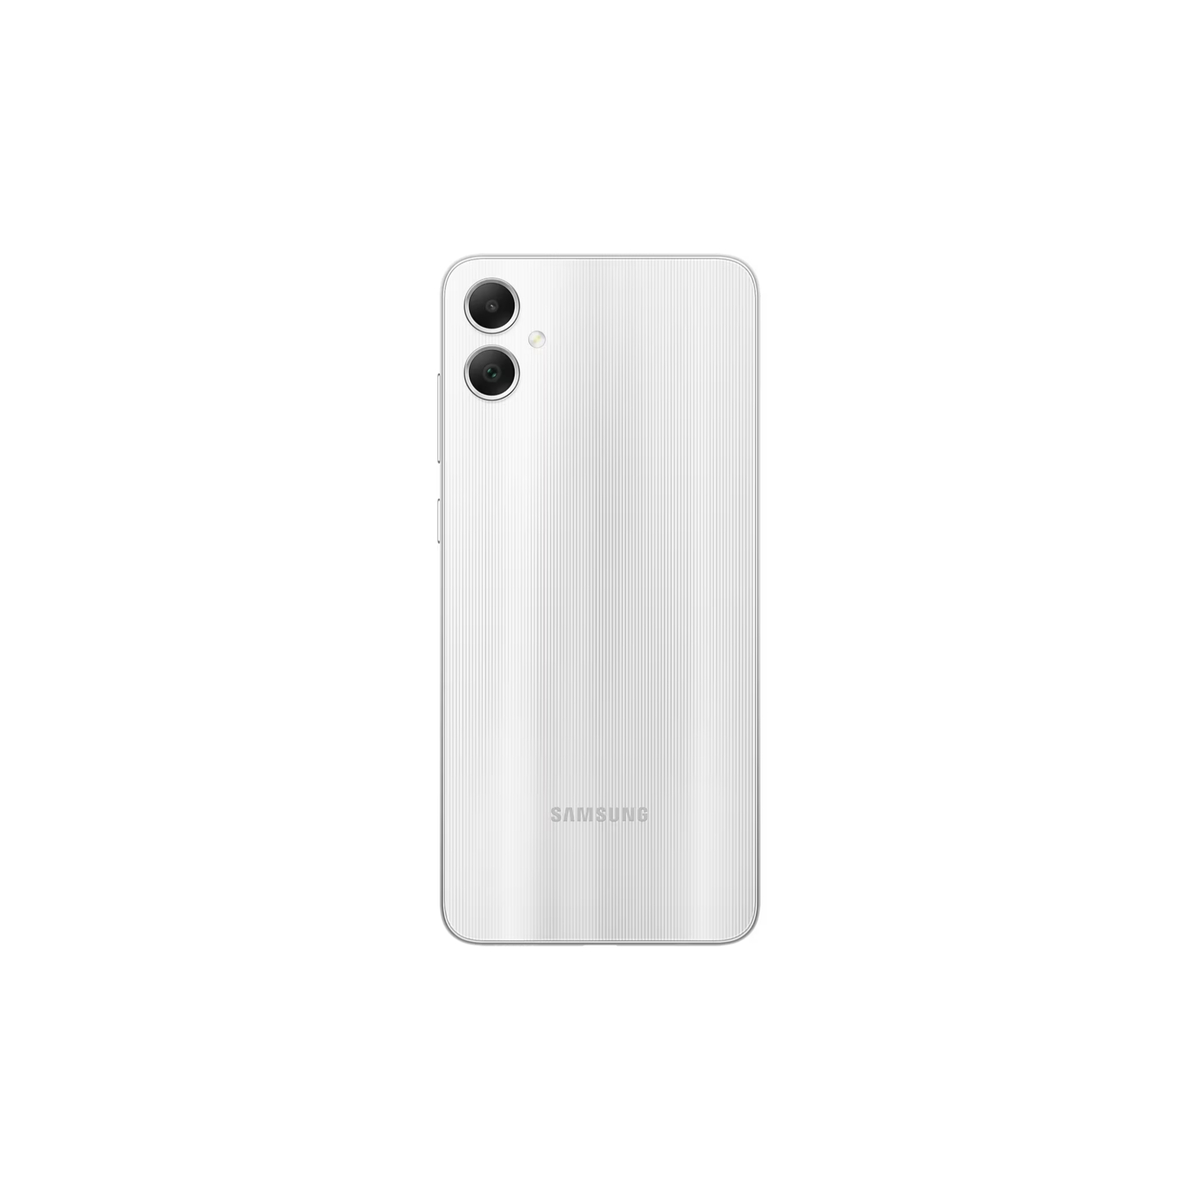 Samsung Galaxy A05 Dual SIM 4G Smartphone, 4 GB RAM, 64 GB Storage, Silver, SM-A055FZSDMEA